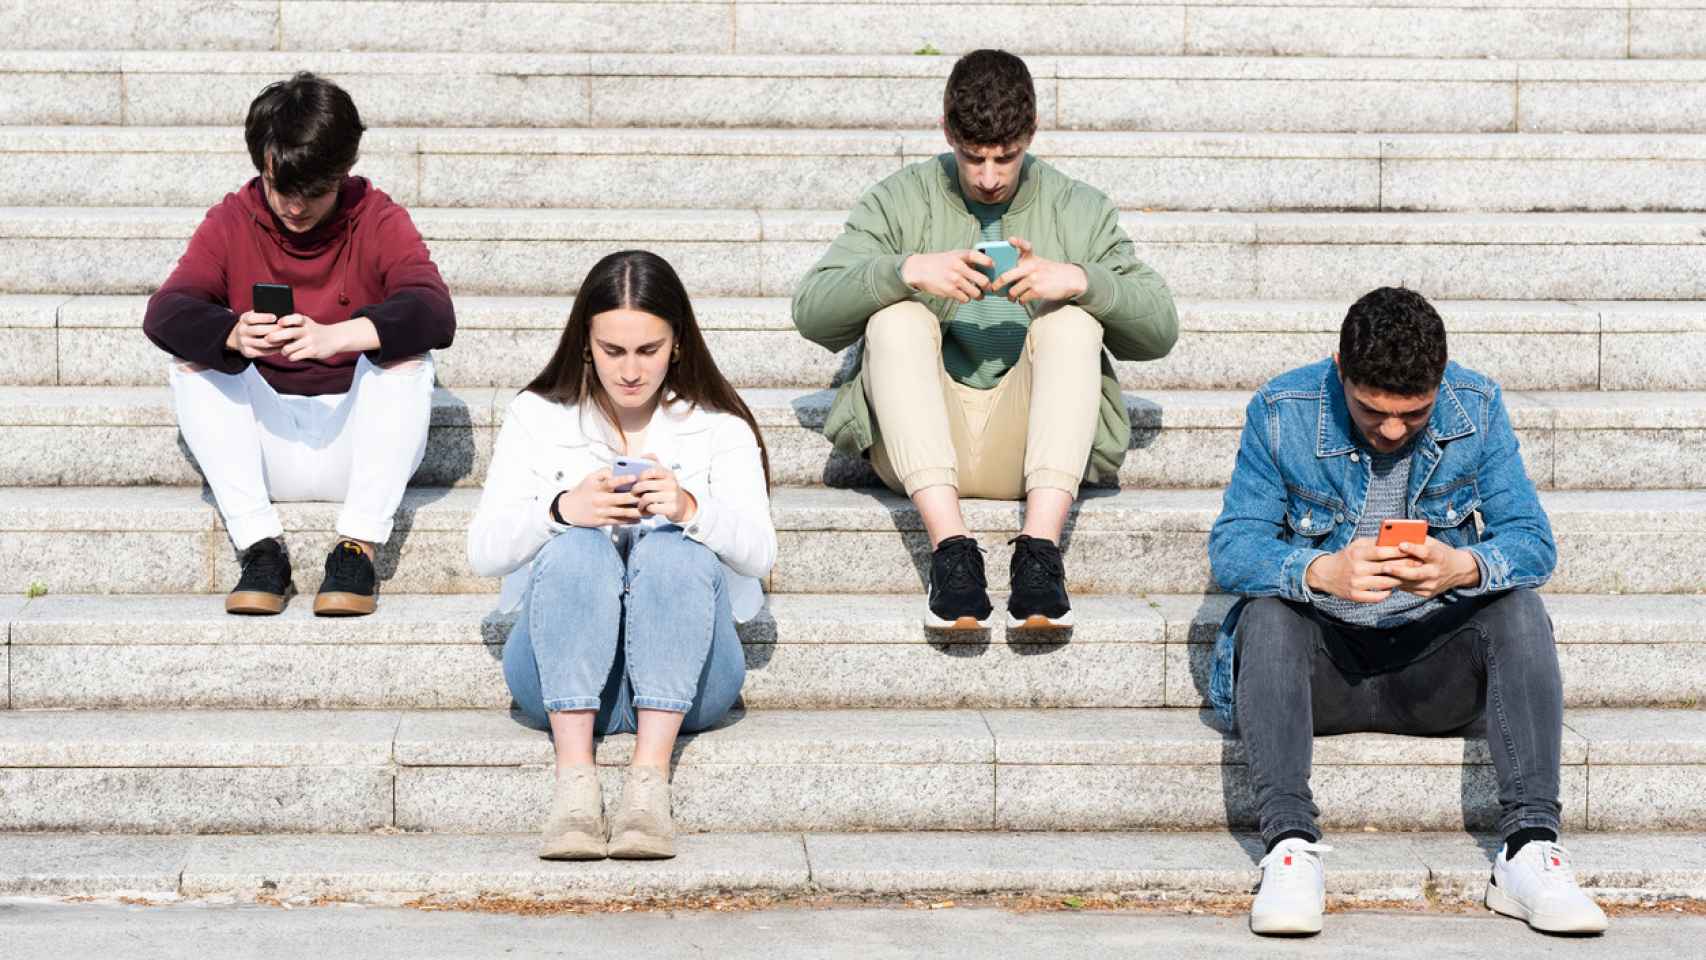 Un grupo de jóvenes utiliza sus teléfonos móviles en unas escaleras.